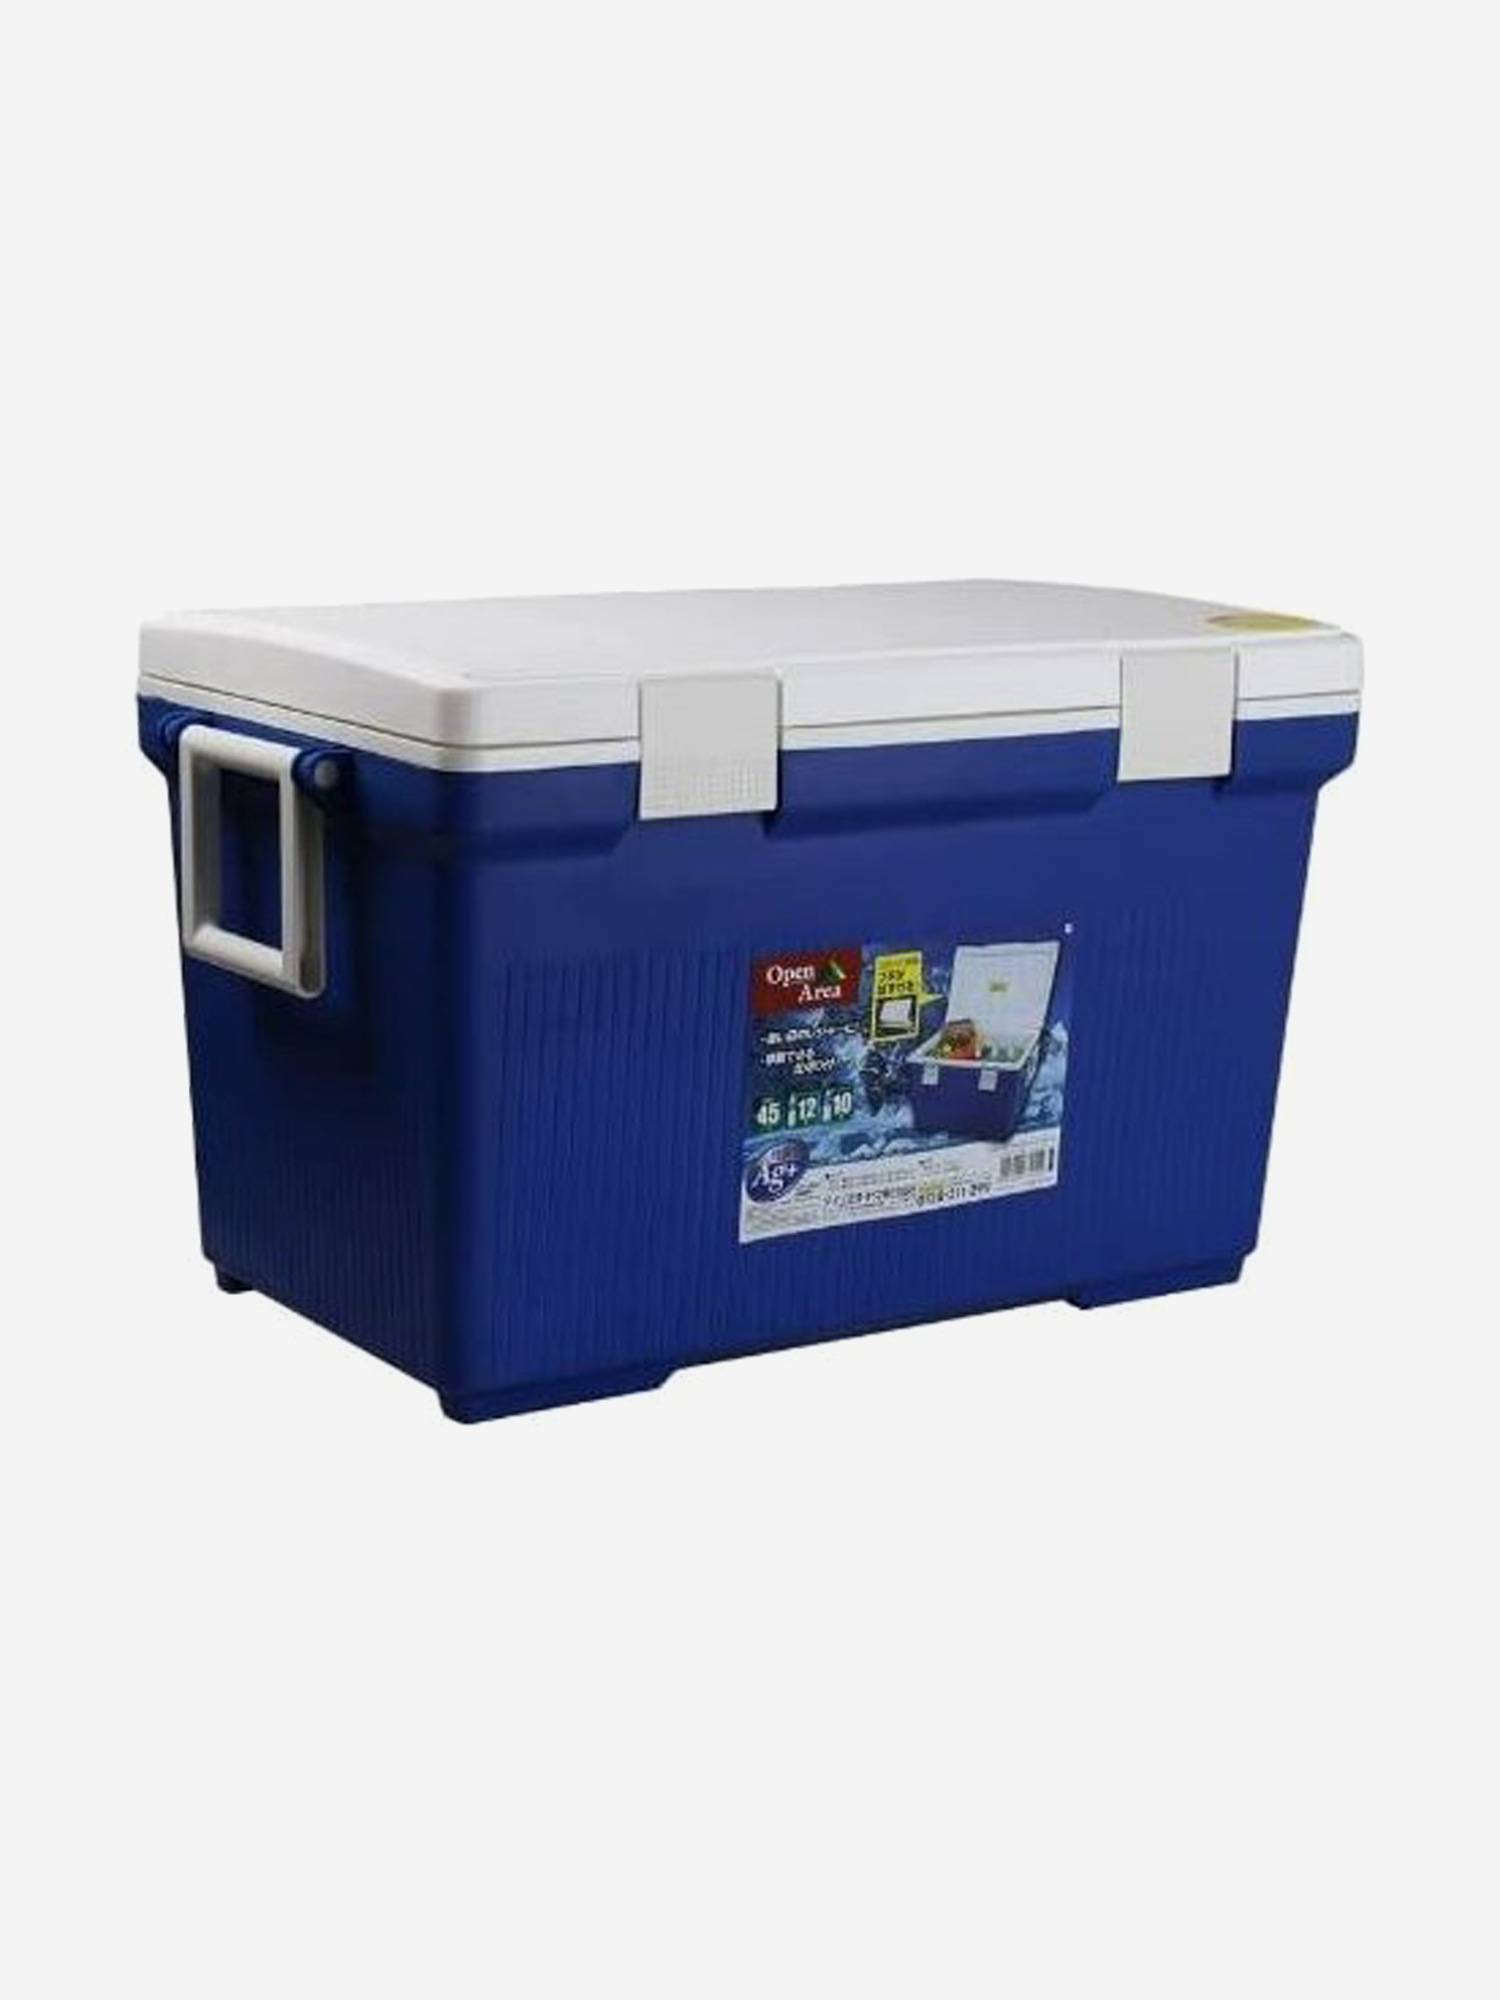 Термобокс IRIS OHYAMA Cooler Box CL-45, 45 литров, синий/белый, Синий термобокс shinwa holiday land cooler 27h белый белый